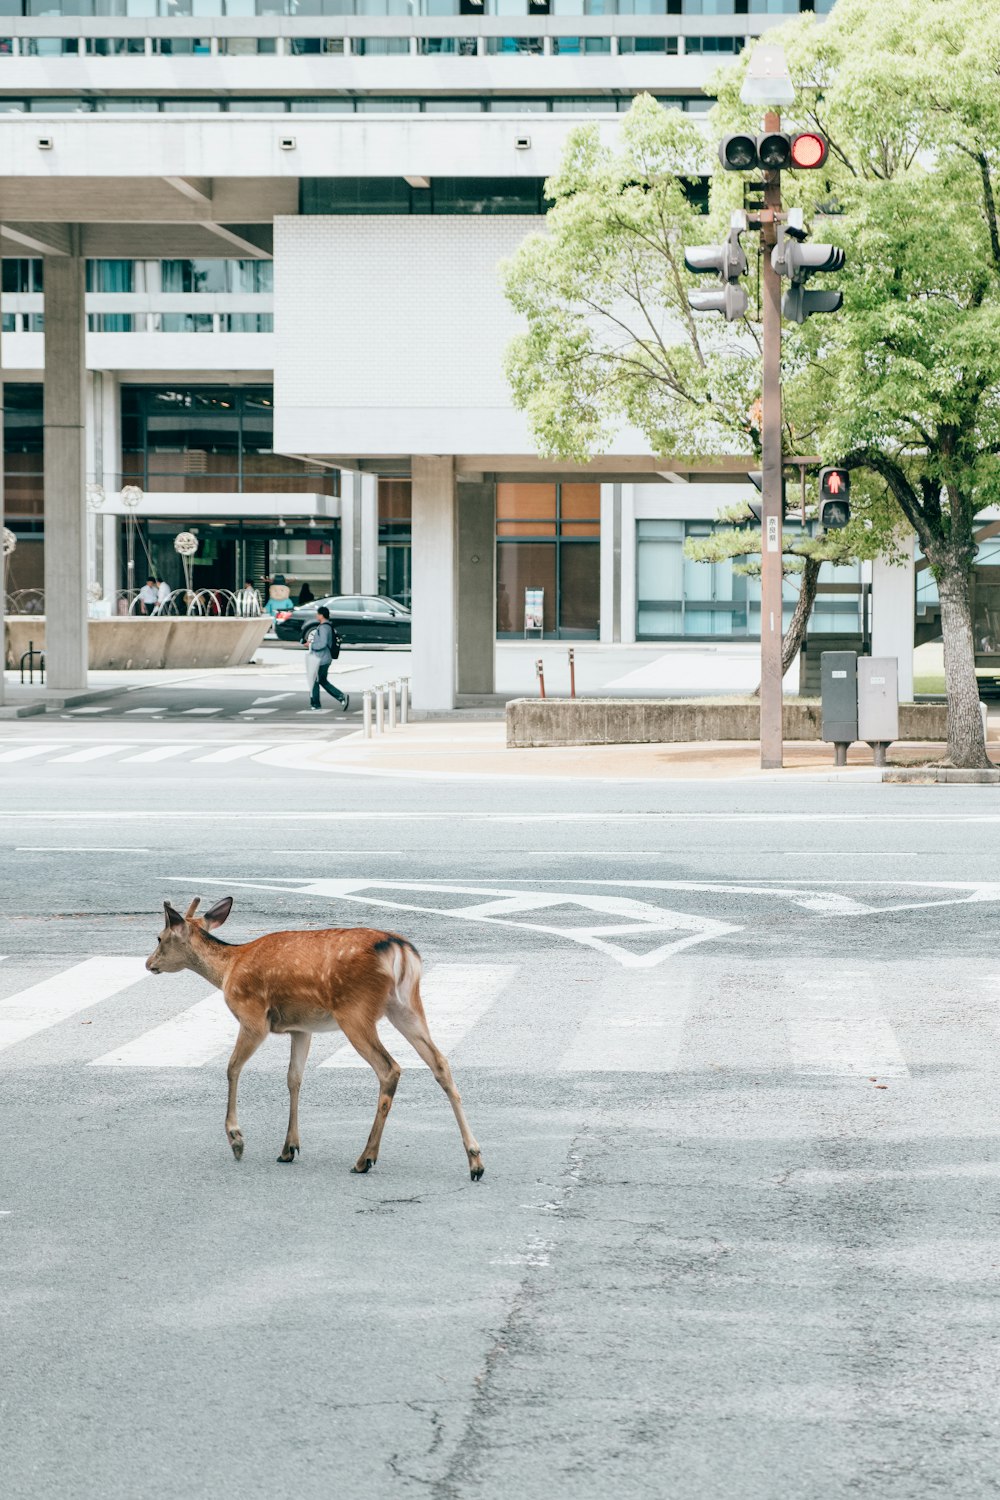 deer walking down the street